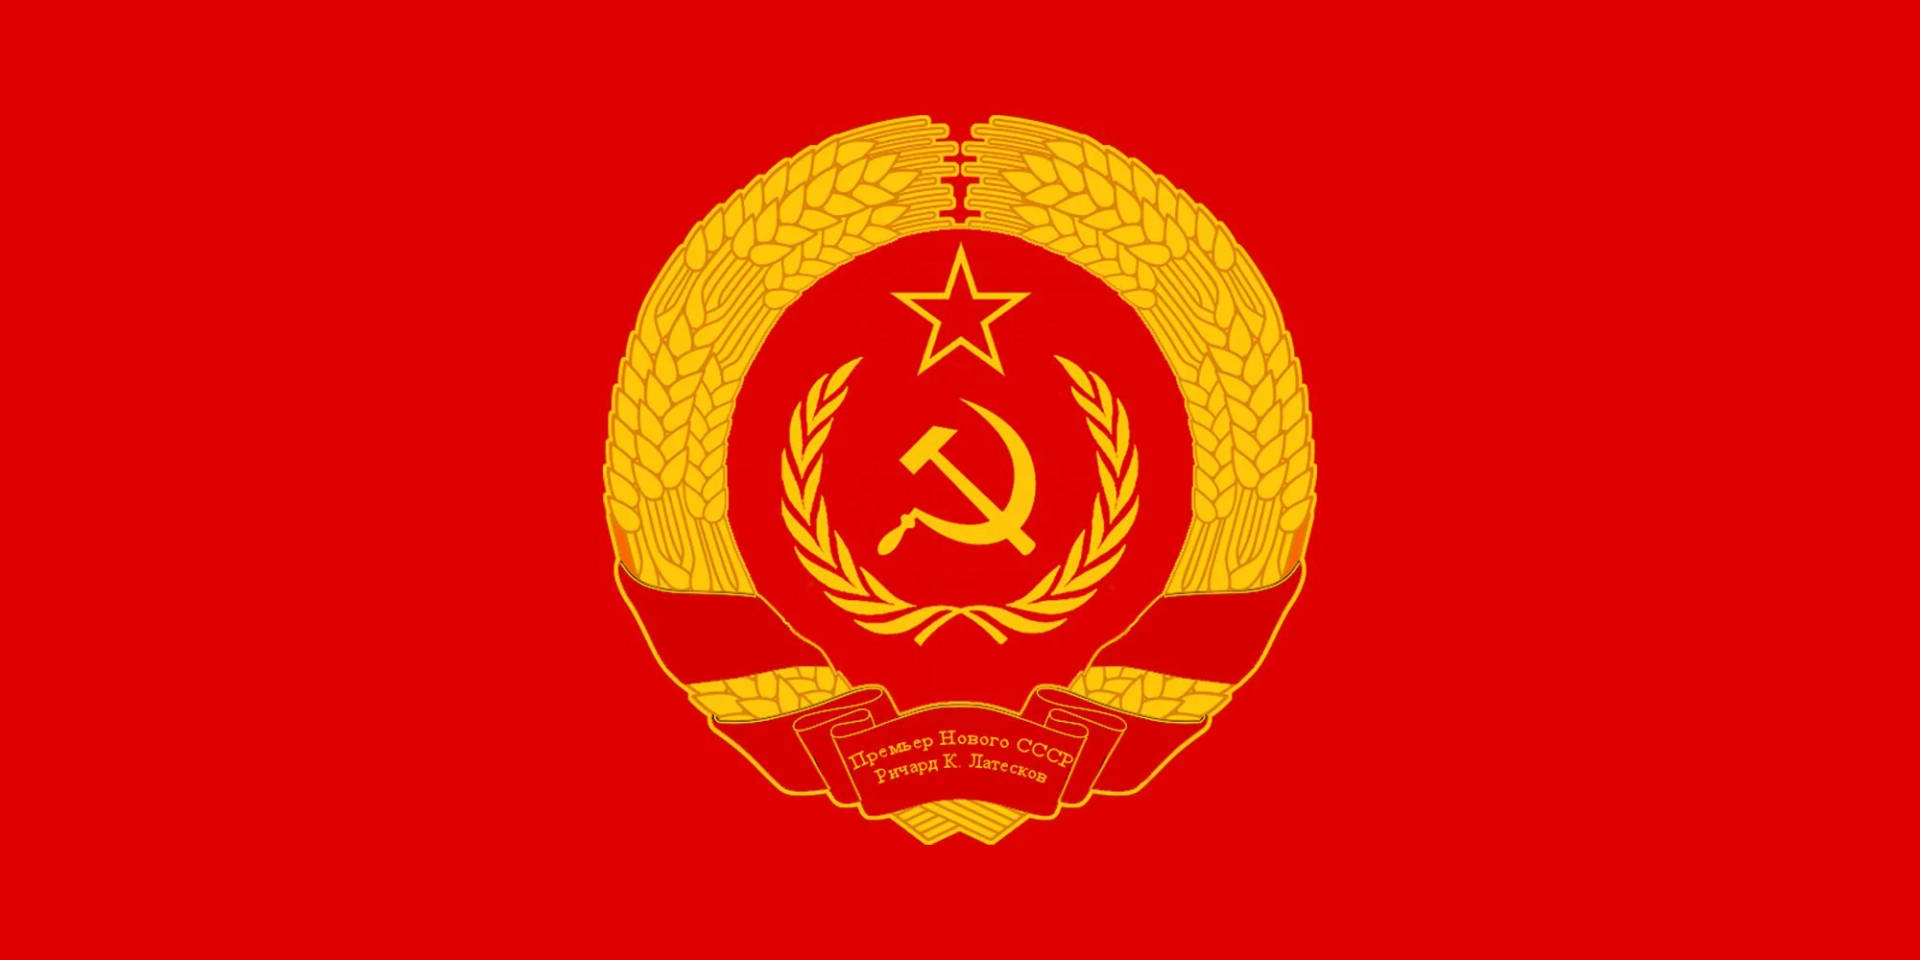 Sovjetunionensflagga I En Cirkulär Logotyp. Wallpaper